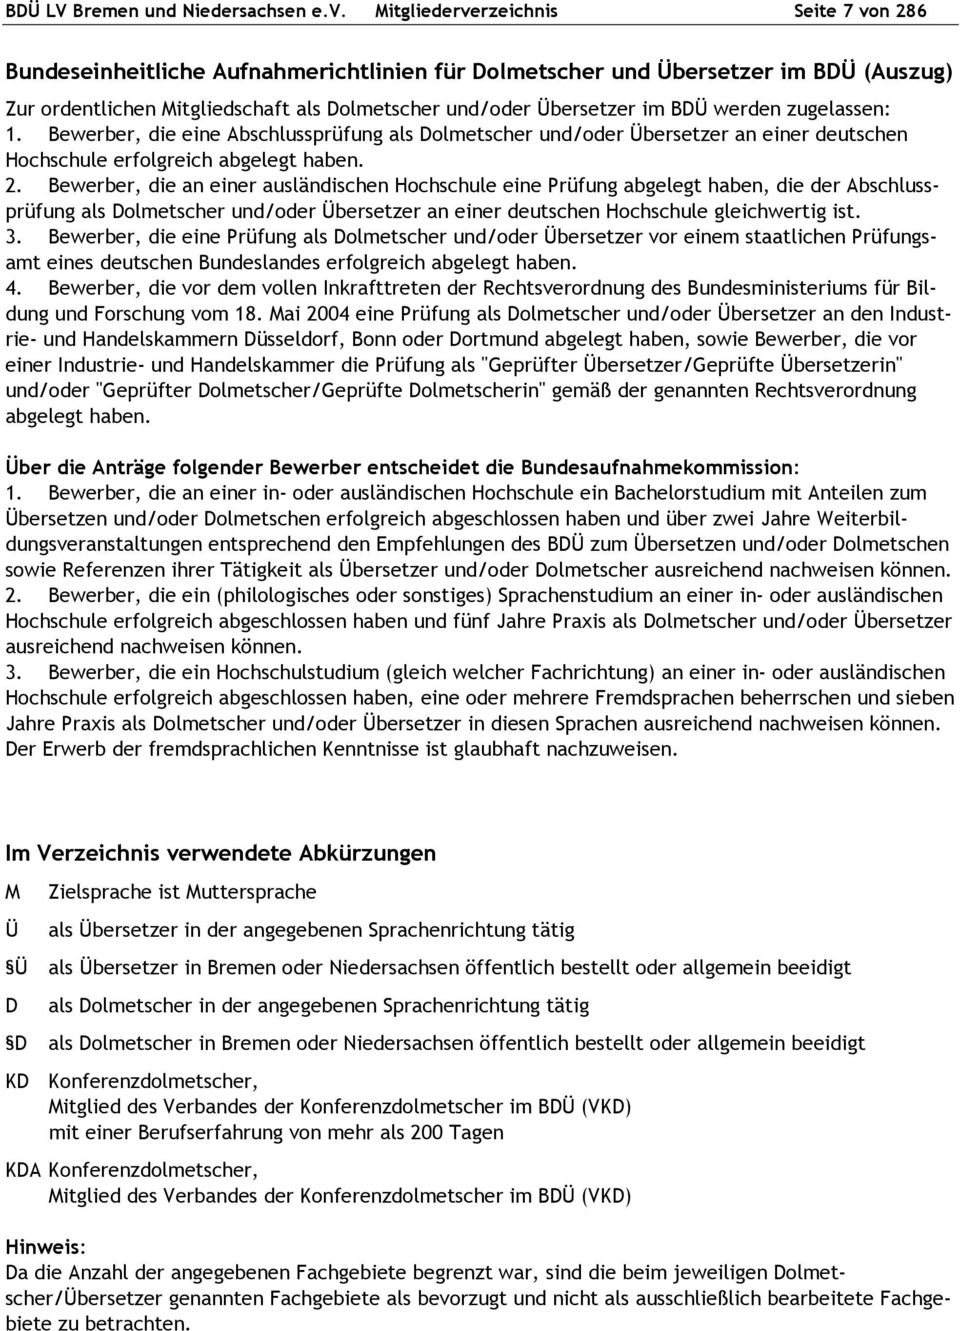 Dolmetscher Und Ubersetzer In Bremen Und Niedersachsen Pdf Kostenfreier Download